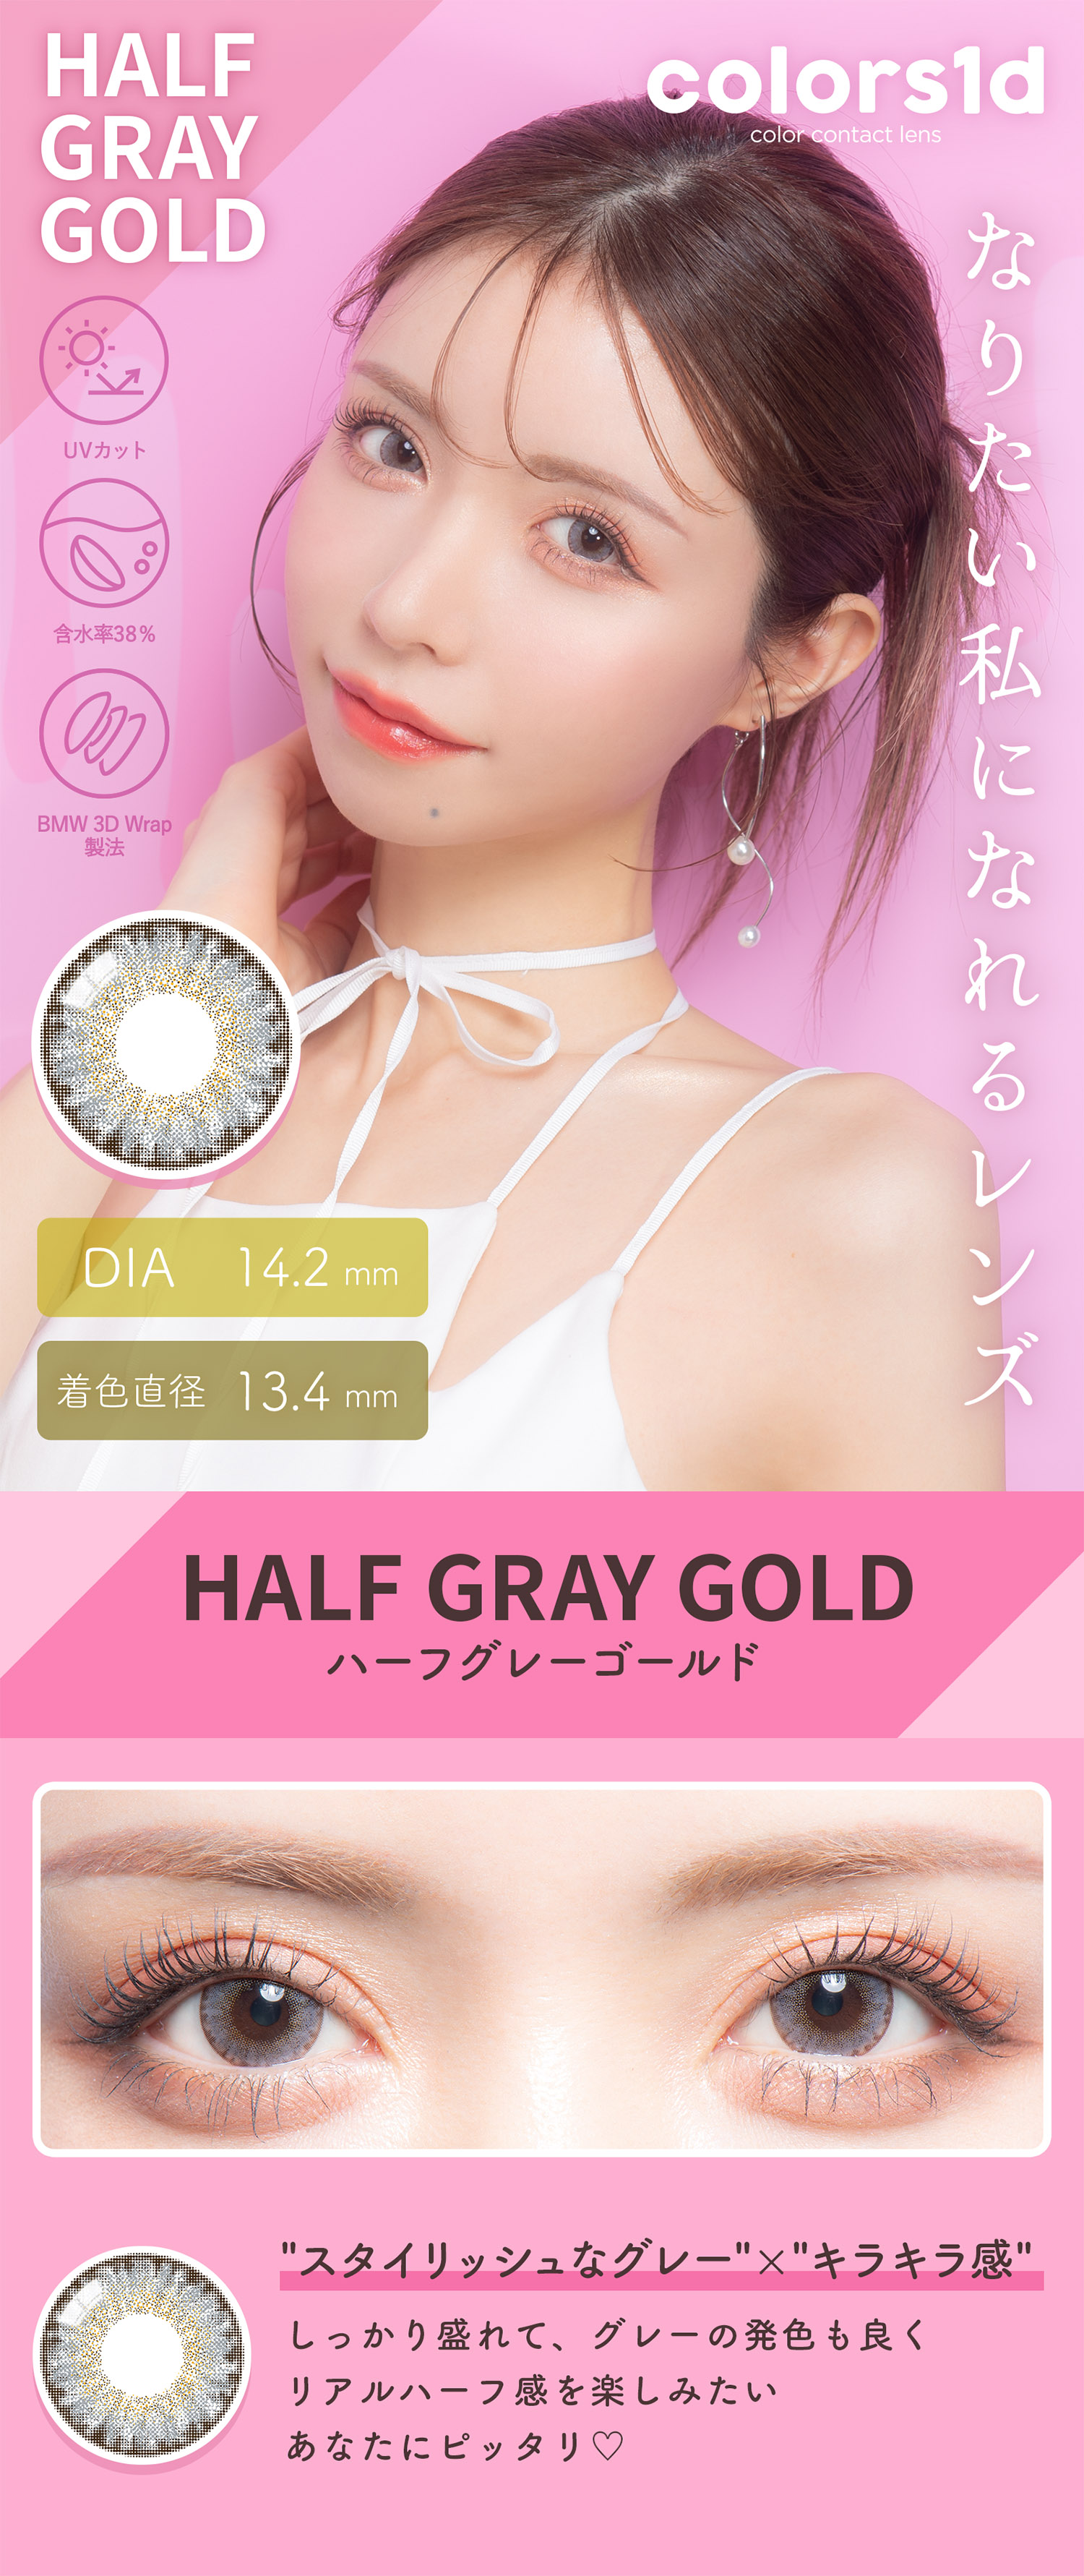 Colors(カラーズ)ハーフグレーゴールド-Half Gray Gold【度あり/度なし• ワンデー • DIA14.2】